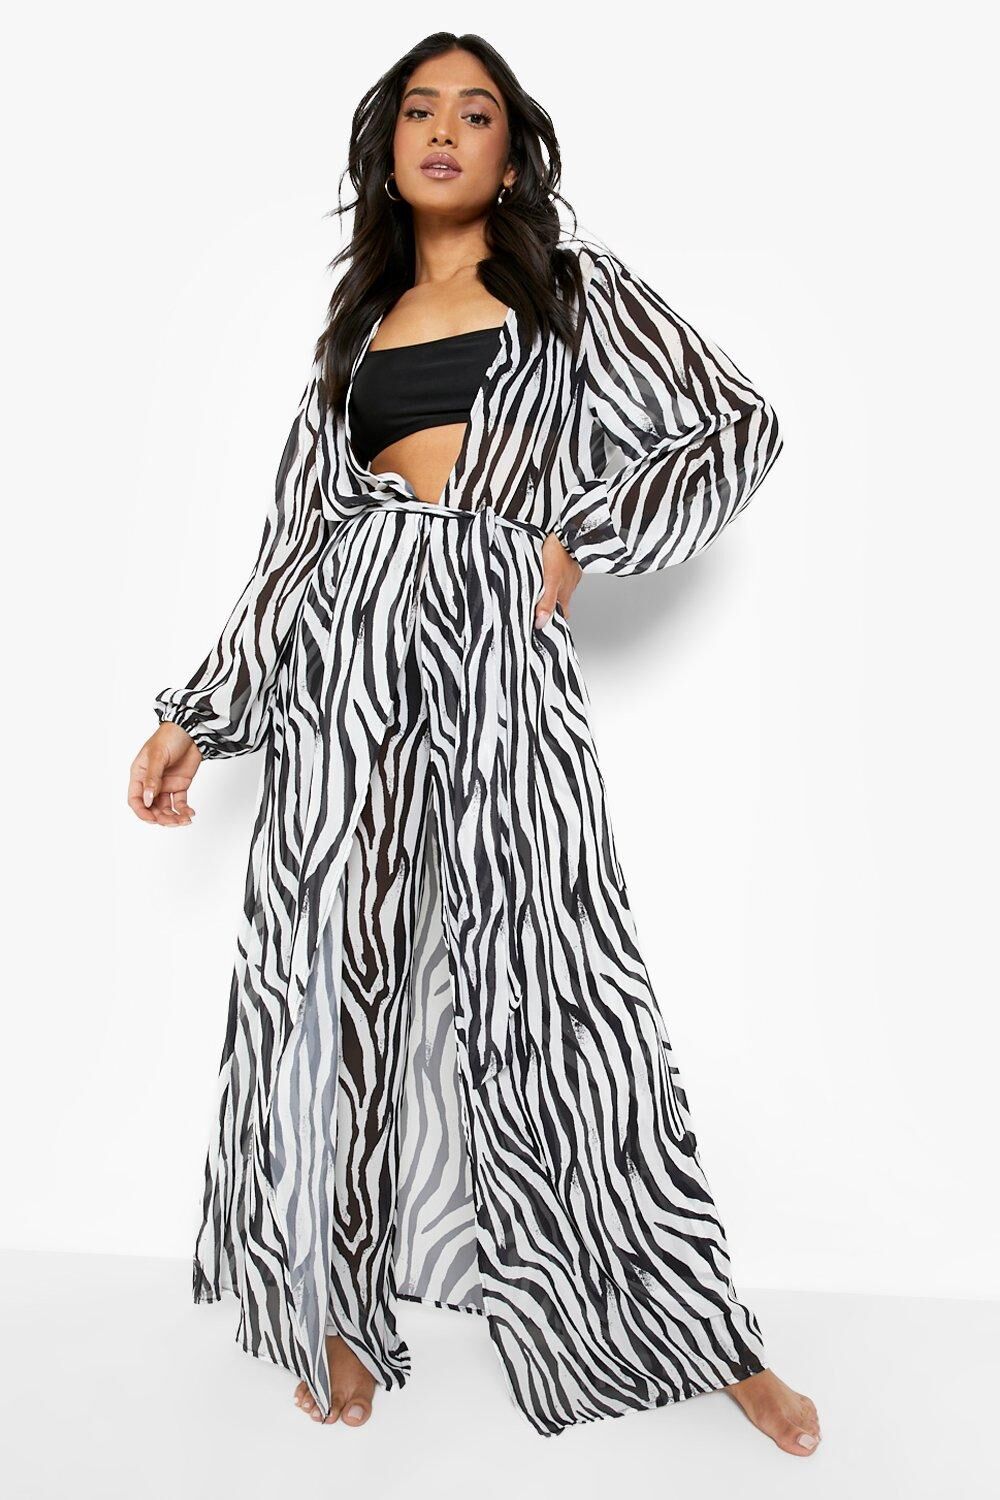 Boohoo Petite Zebra Print Mesh Kimono- Black & White  - Size: 14